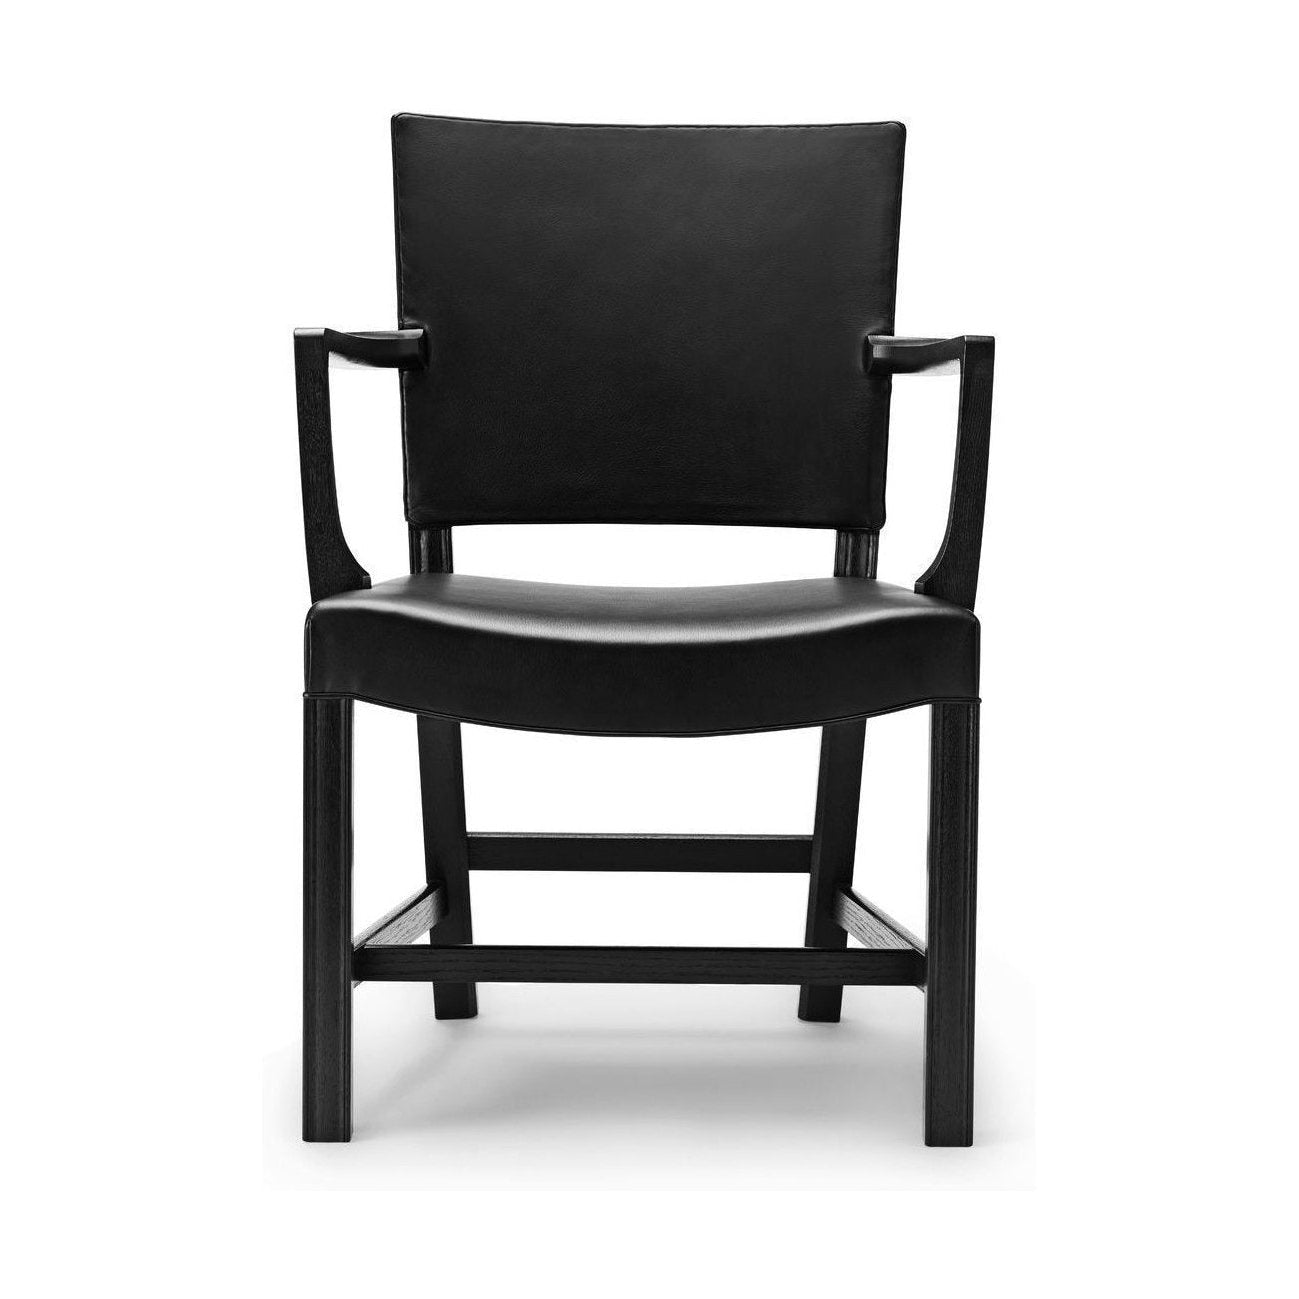 Carl Hansen KK37581 großer roter Sessel, schwarzer Eiche/schwarzes Leder